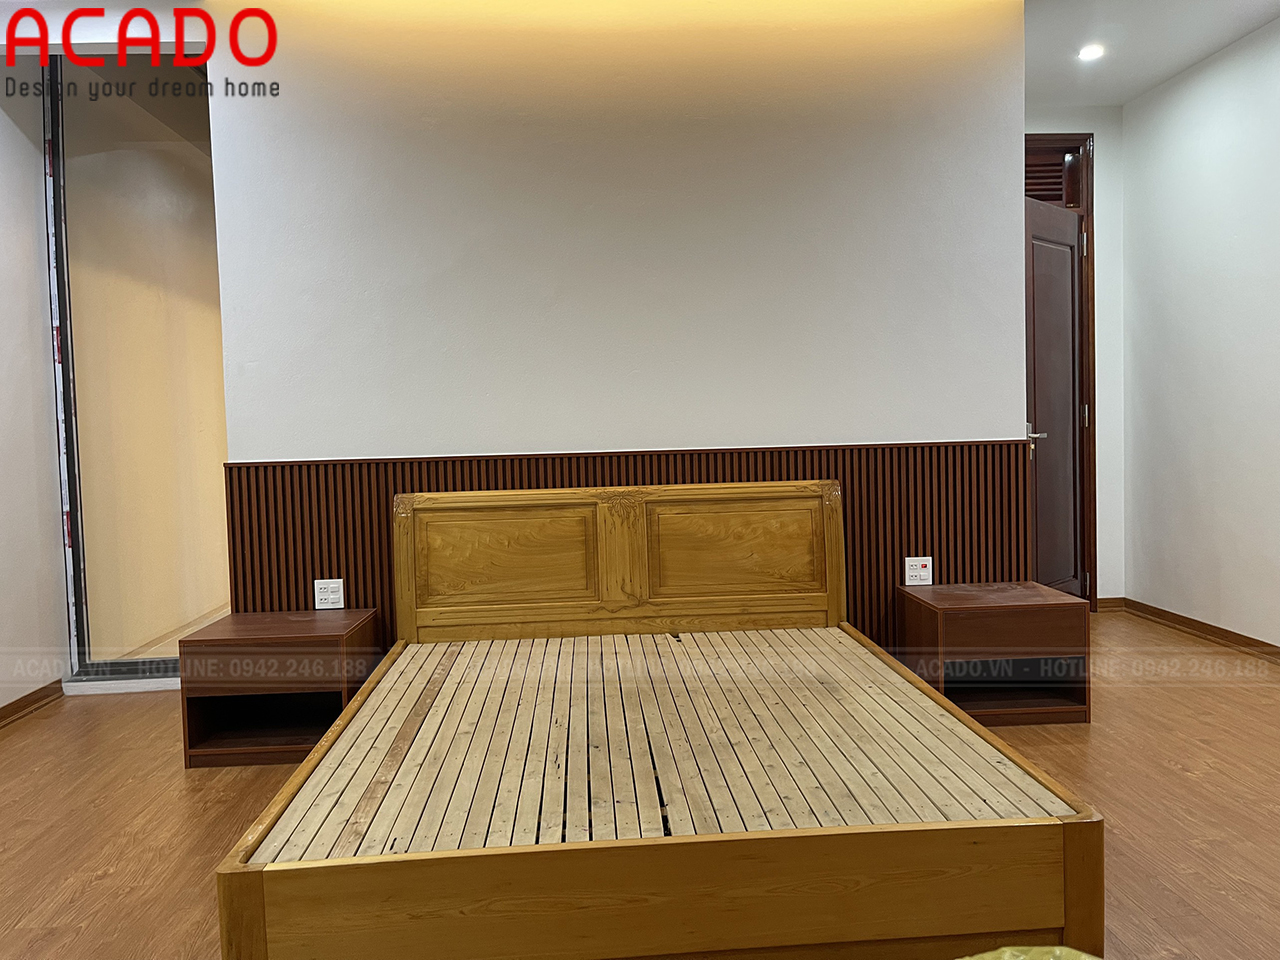 Giường ngủgỗ sồi Nga phun màu vàng nhạt trẻ trung - Thi công nội thất tại Bắc Giang